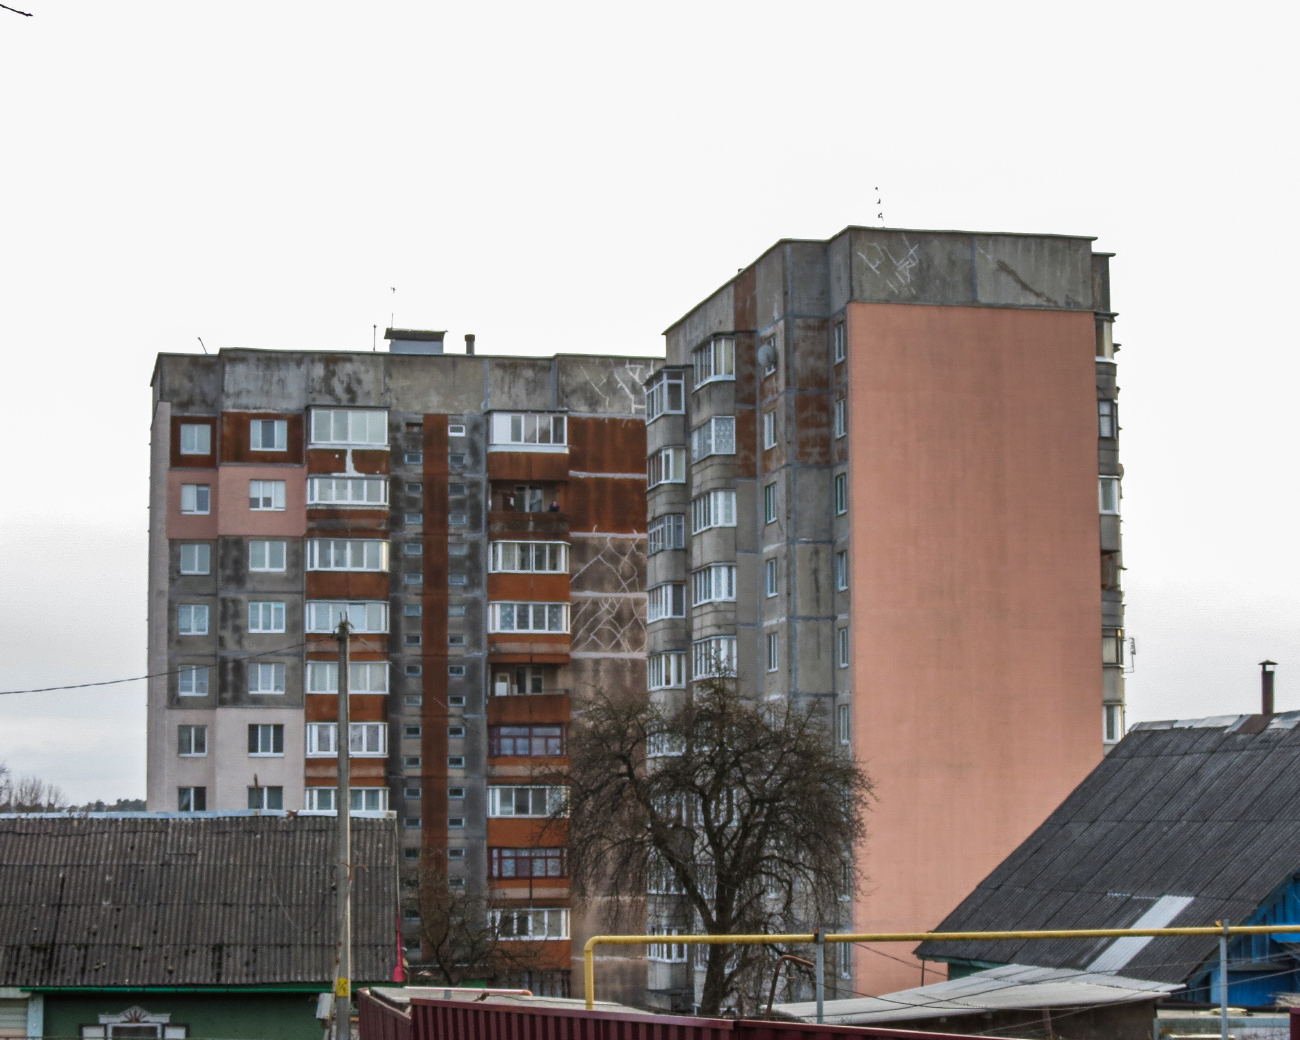 Борисов, Улица Рубена Ибаррури, 28; Улица Рубена Ибаррури, 30